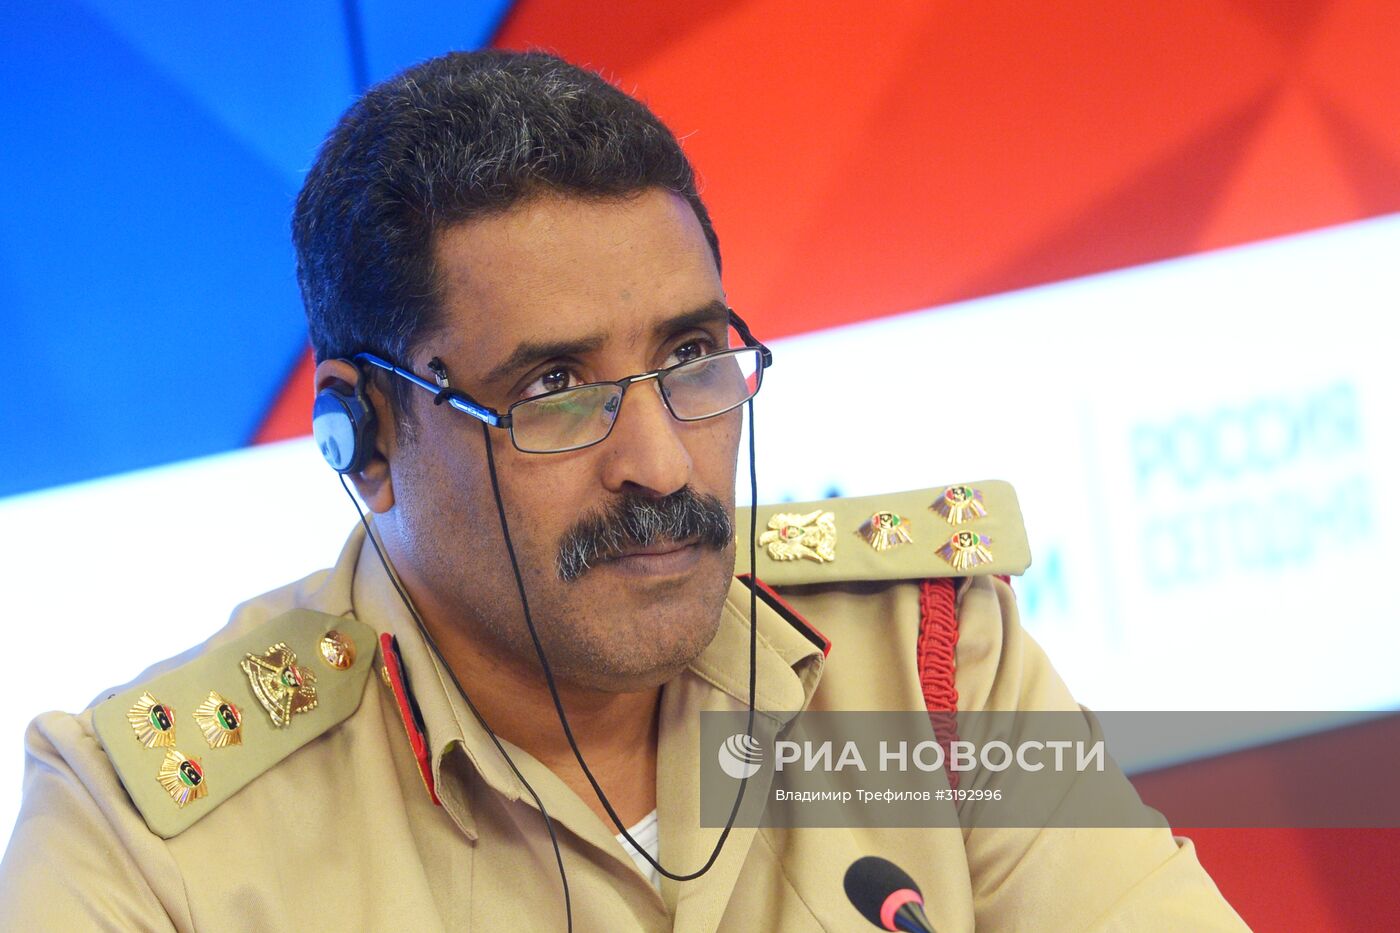 П/к официального представителя Ливийской национальной армии Ахмада Аль-Мисмари